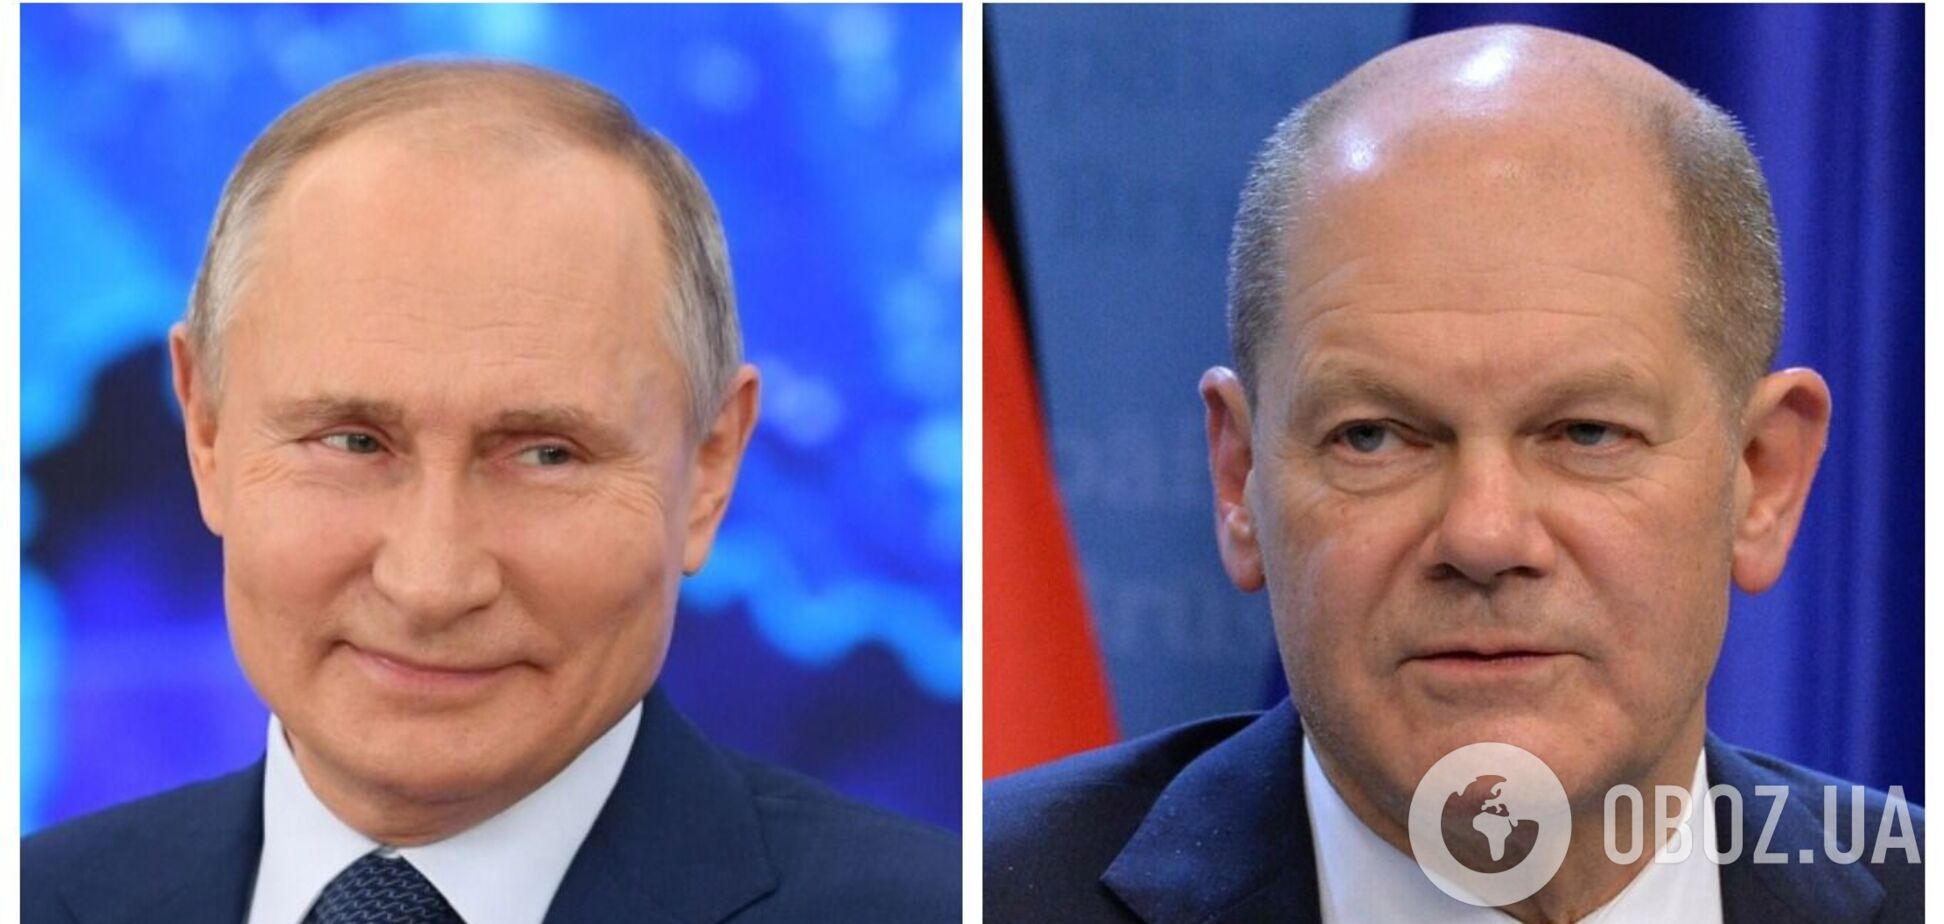 'Місія з високими ставками': Шольц проведе переговори з Путіним, щоб не допустити війни – Reuters